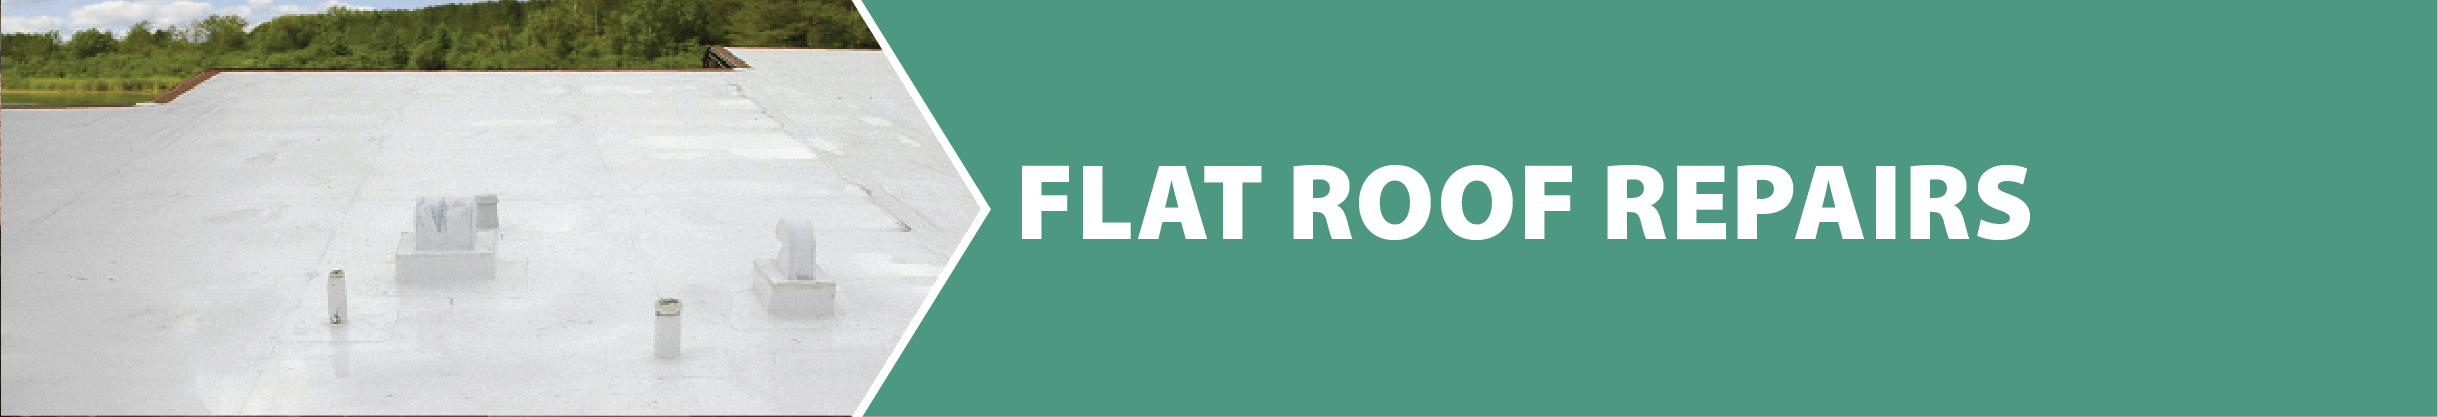 Flat Roof Repair Title Image